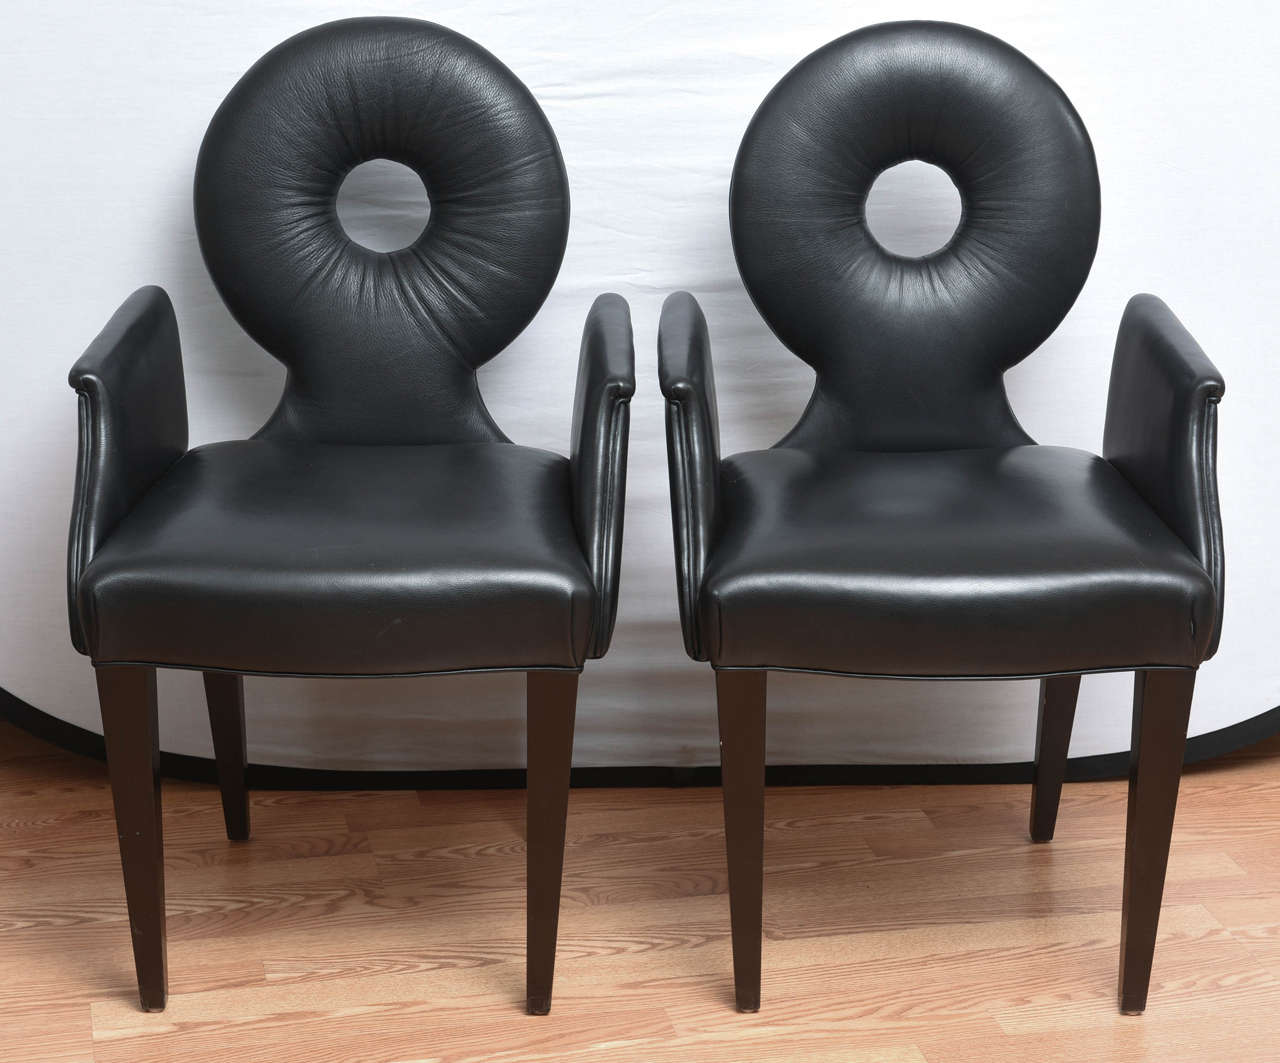 Ensemble très chic de quatre fauteuils modernes en cuir noir avec un cercle ouvert au centre du dossier.